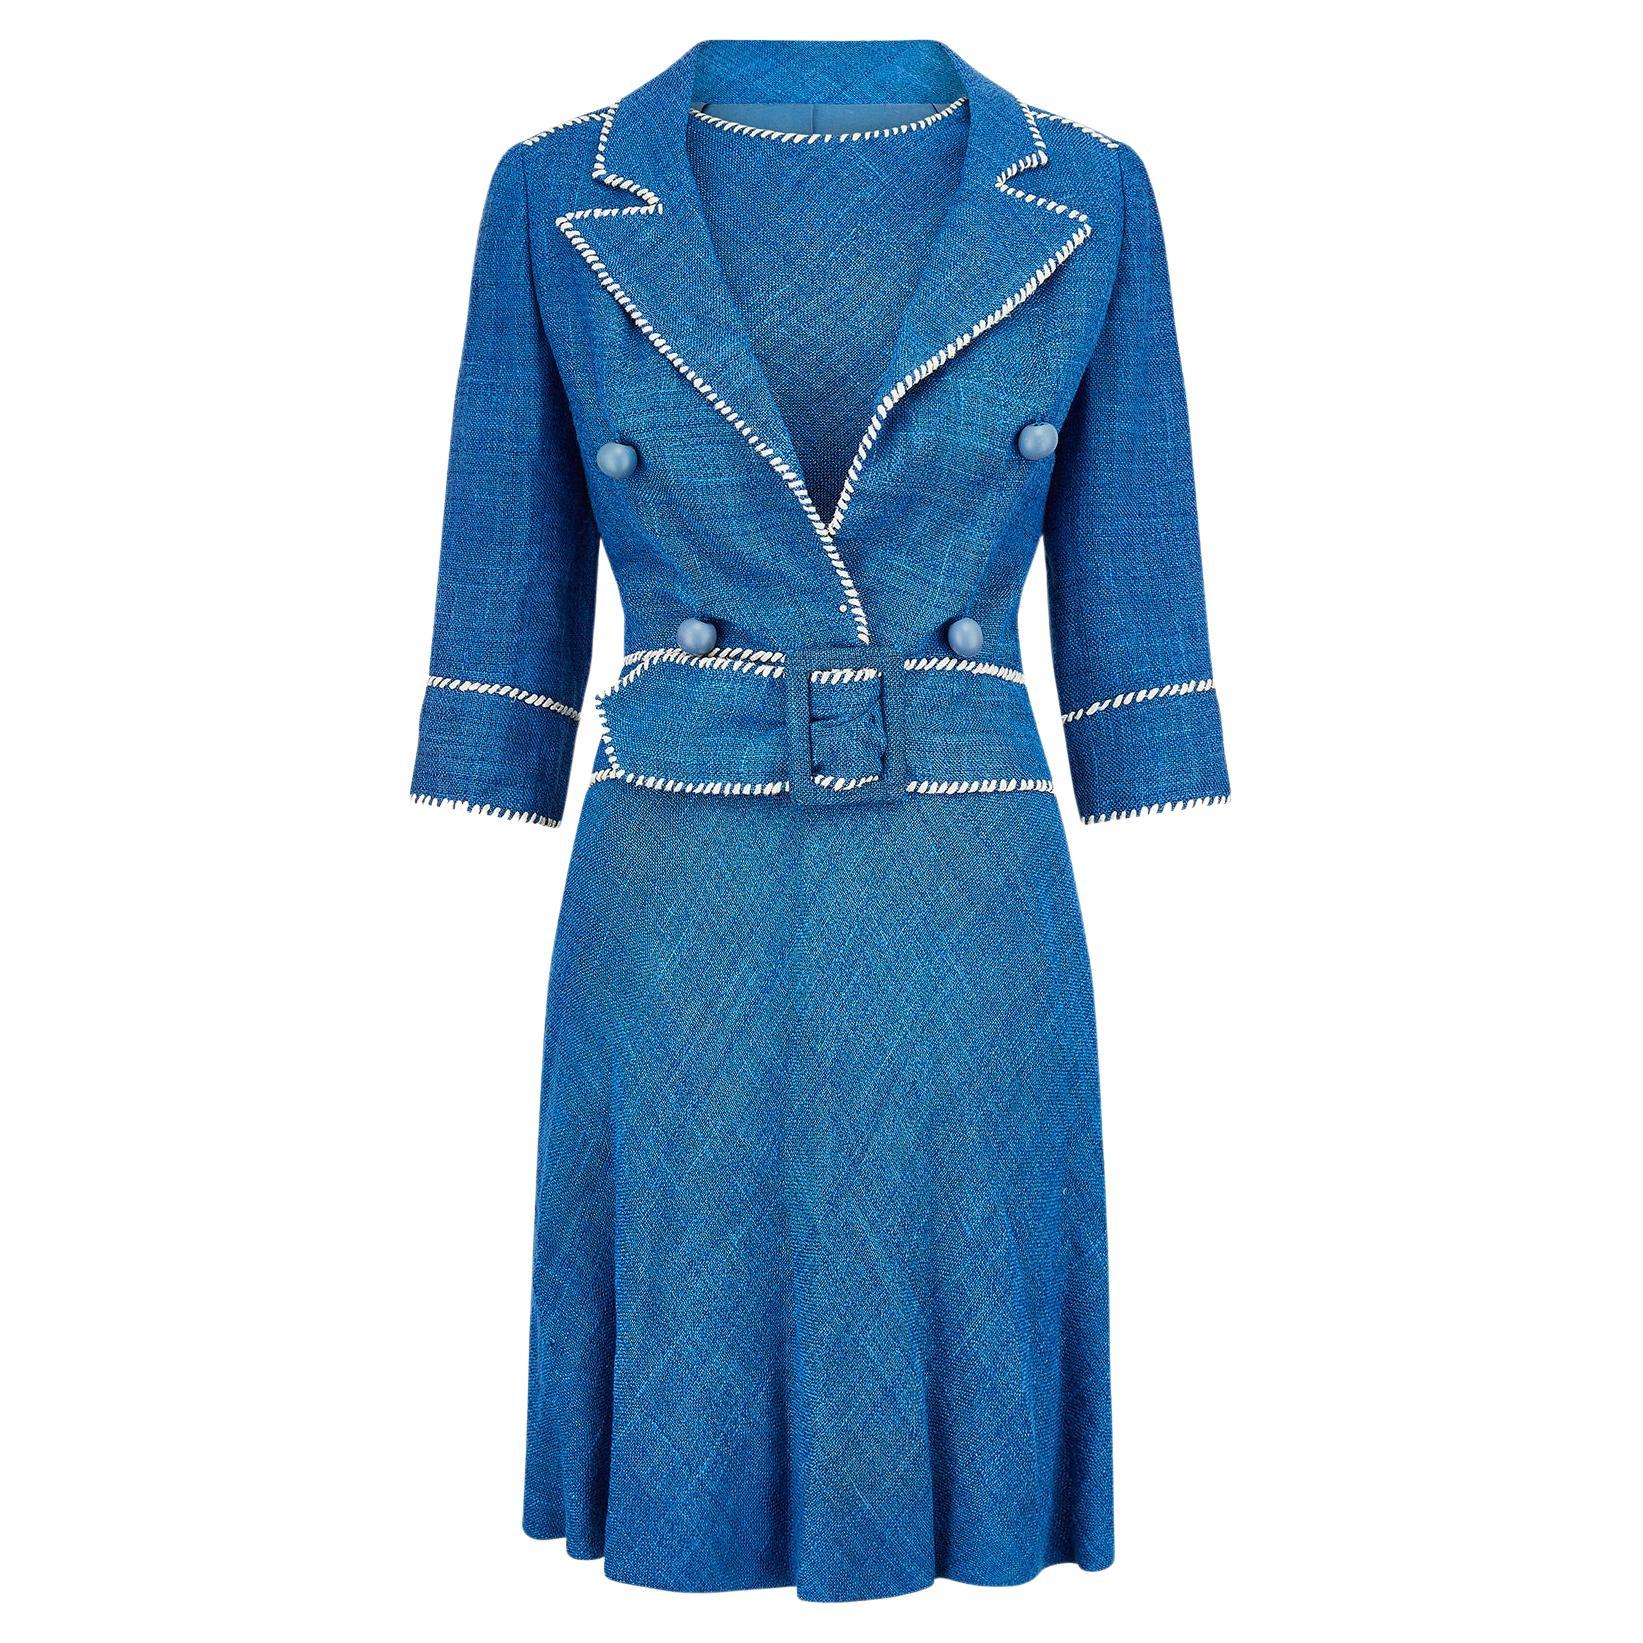 Costume robe en lin bleu Jacques Esterel Haute Couture des années 1950